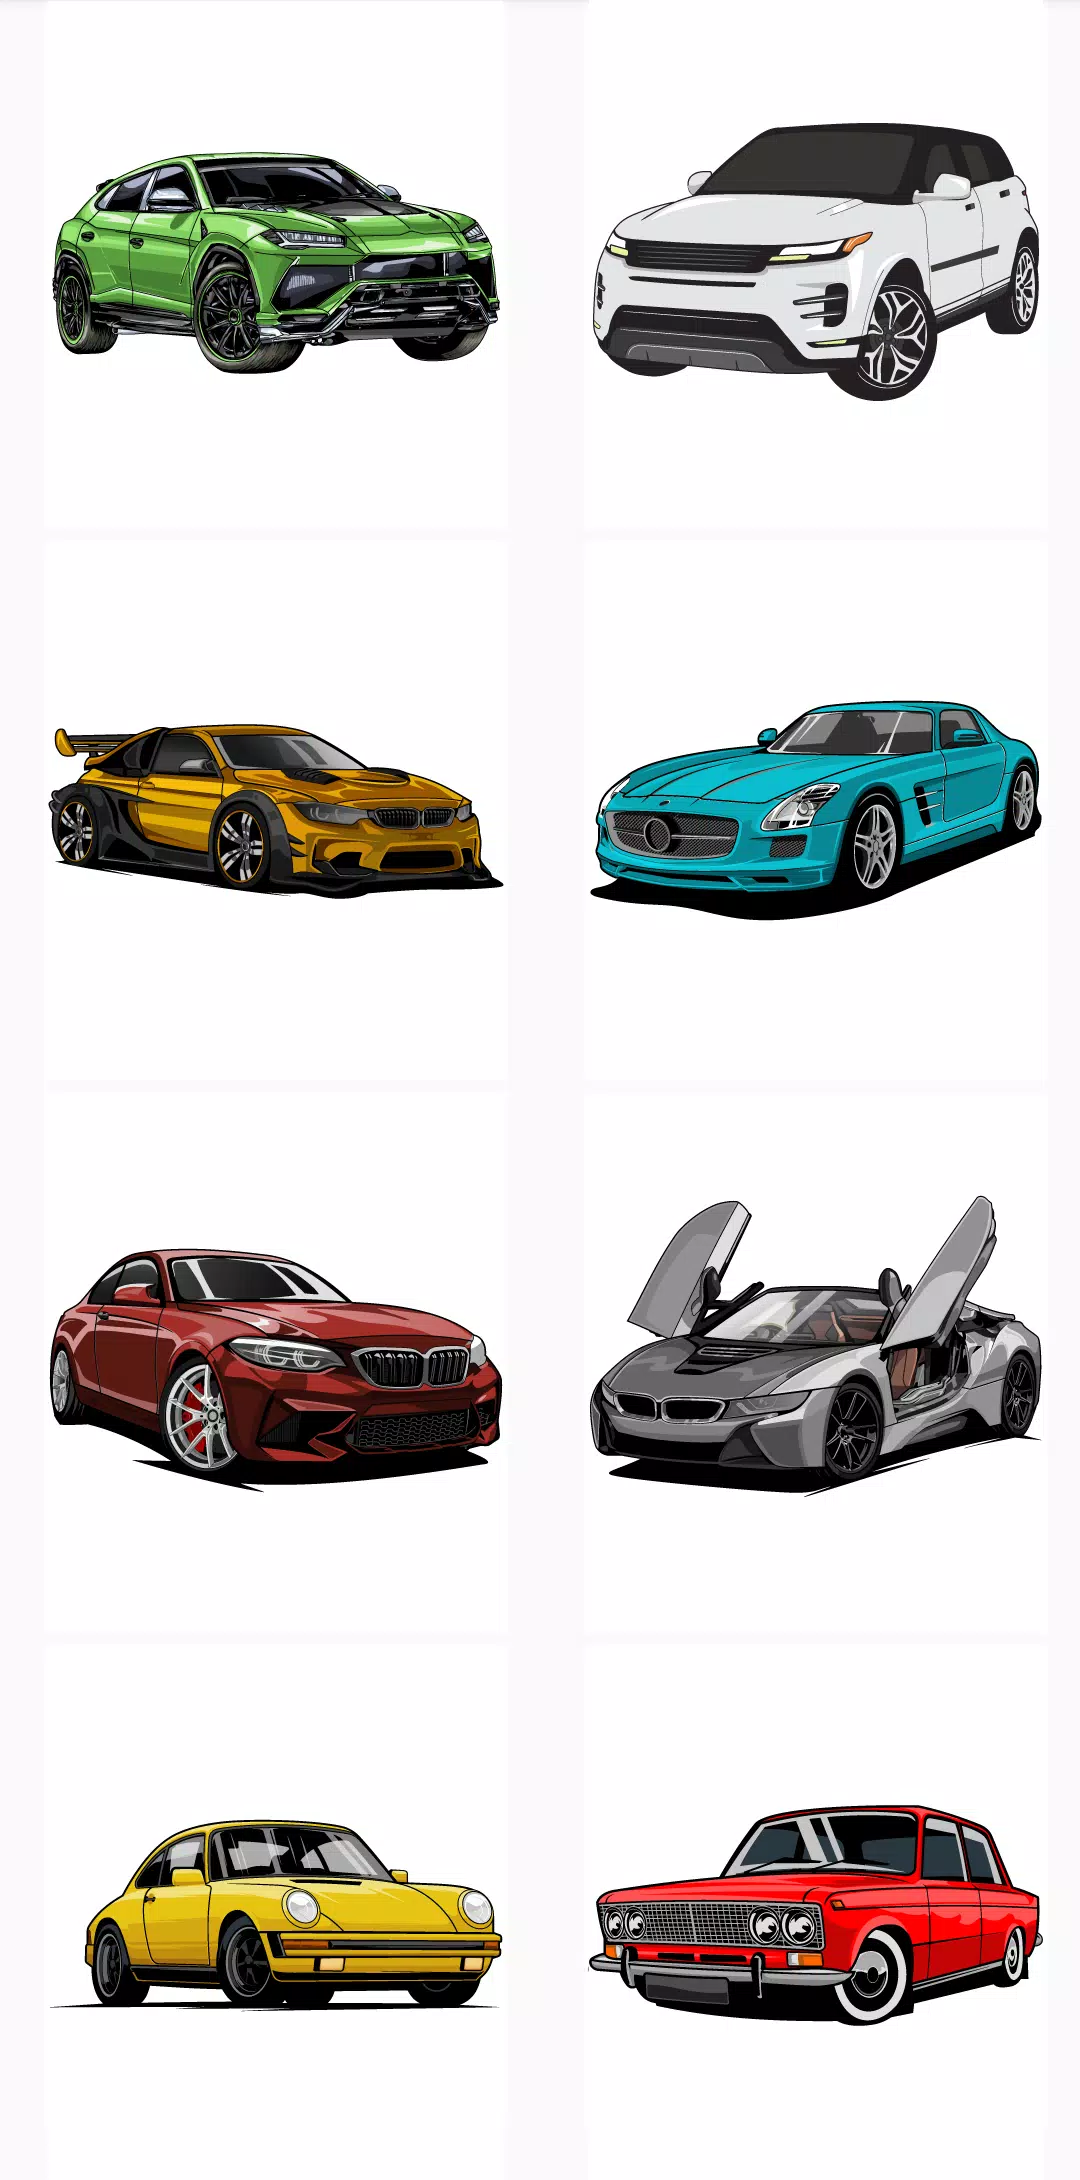 Download do APK de Carros do Mundo Colorir - Jogo para Android